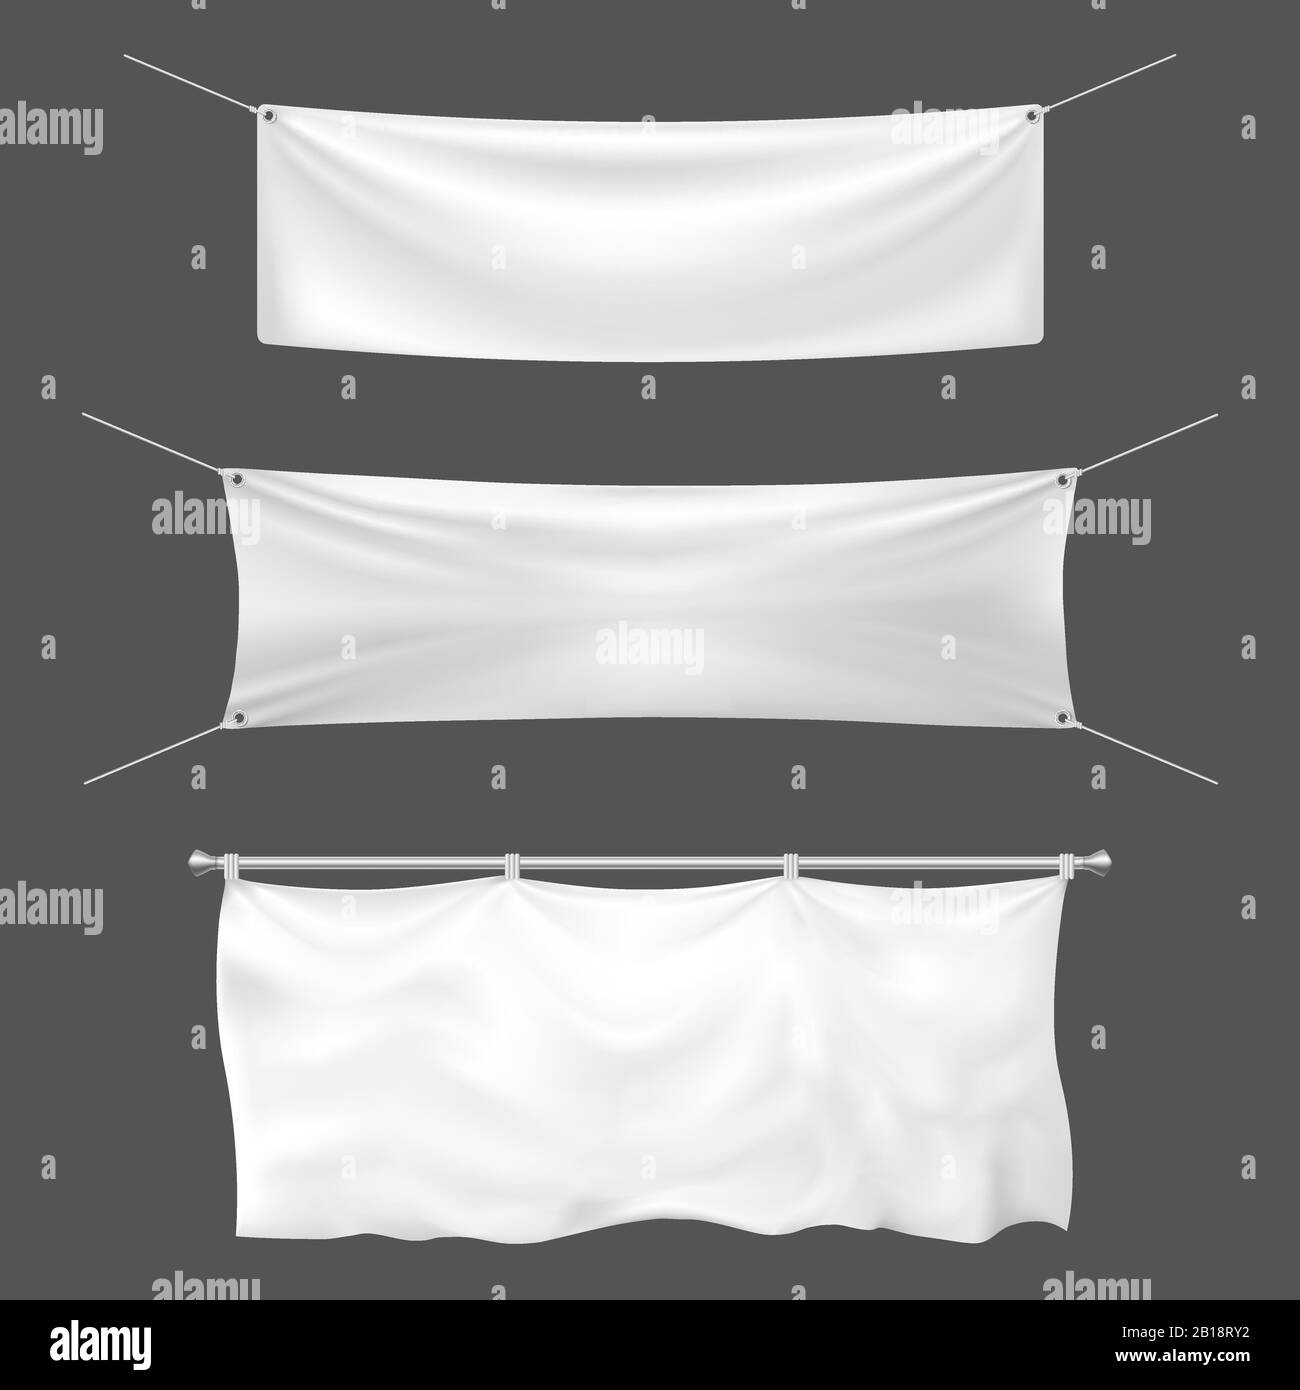 Textilbanner Mockup. Leeres Vorzeichen, hängende leere weiße Banner und Ankündigungs-Canvas-Schilder 3D-Vorlage Vektorgrafiken Stock Vektor